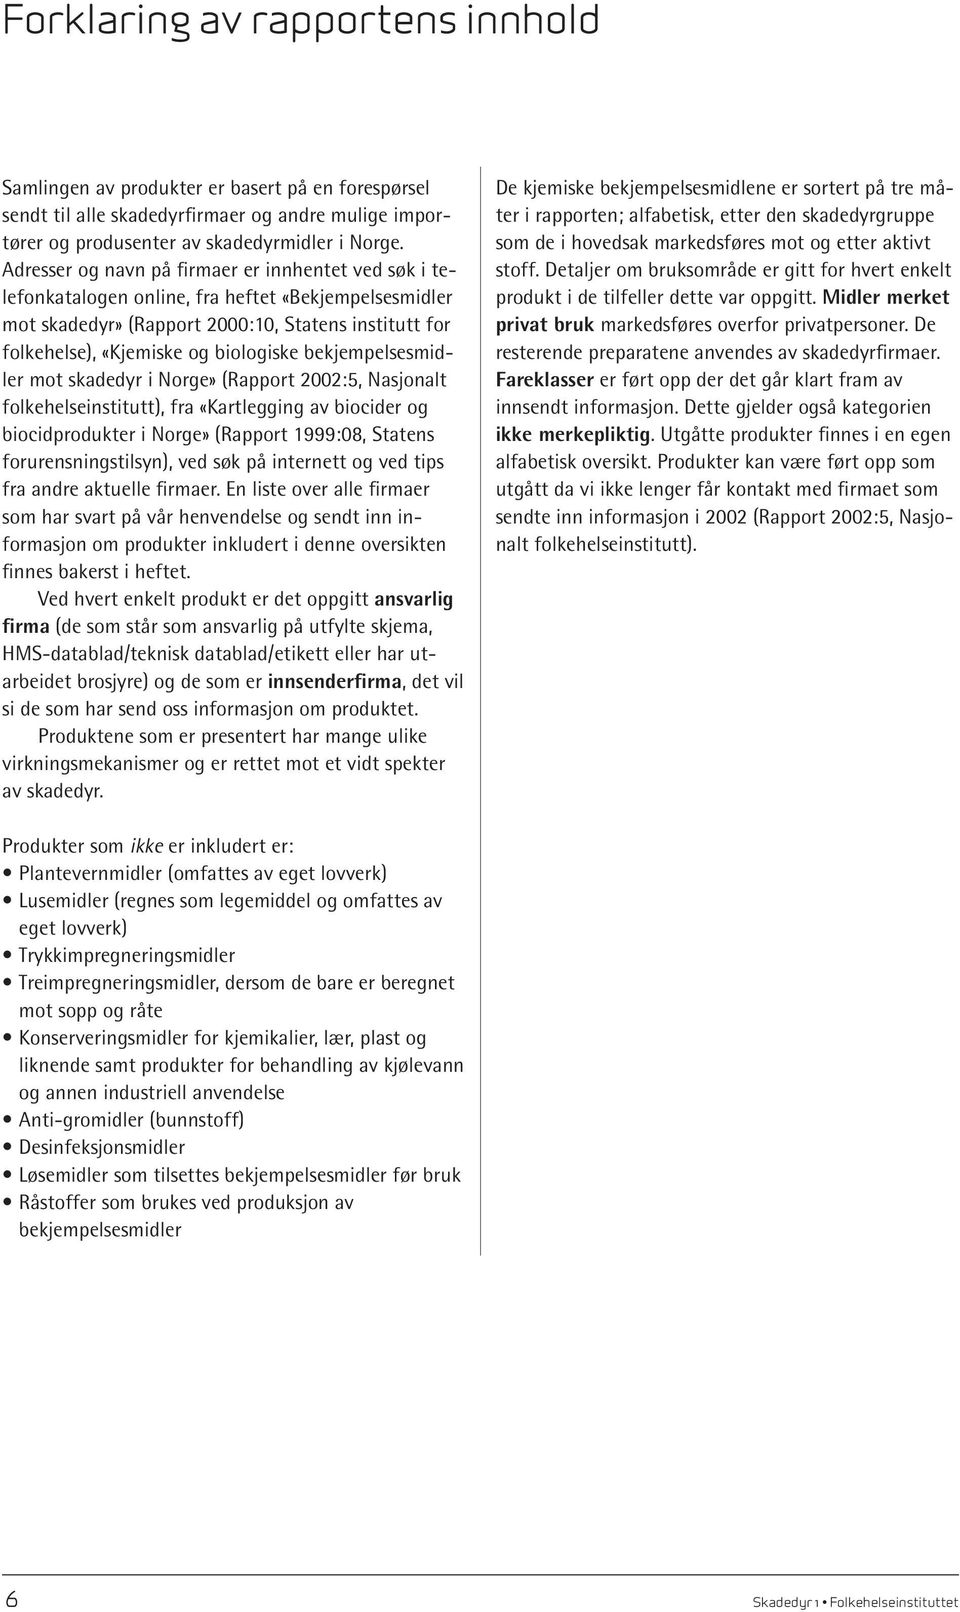 bekjempelsesmidler mot skadedyr i Norge» (Rapport 2002:5, Nasjonalt folkehelseinstitutt), fra «Kartlegging av biocider og biocidprodukter i Norge» (Rapport 1999:08, Statens forurensningstilsyn), ved